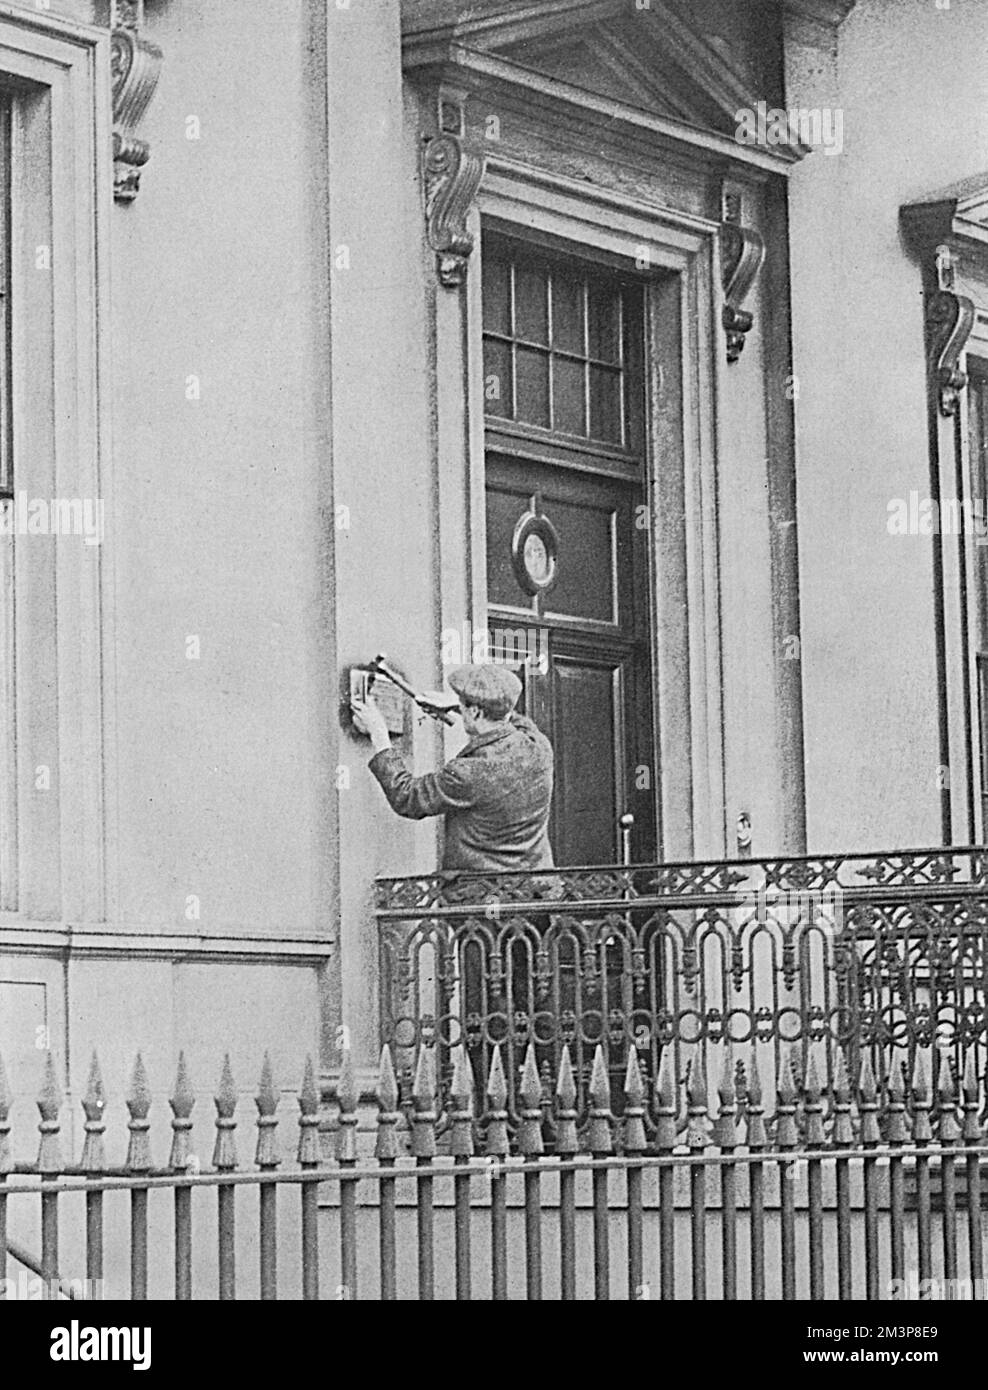 Un segno di rottura delle relazioni diplomatiche allo scoppio della prima guerra mondiale è stata la rimozione della lastra di ottone presso l'ambasciata tedesca a Londra. Foto Stock